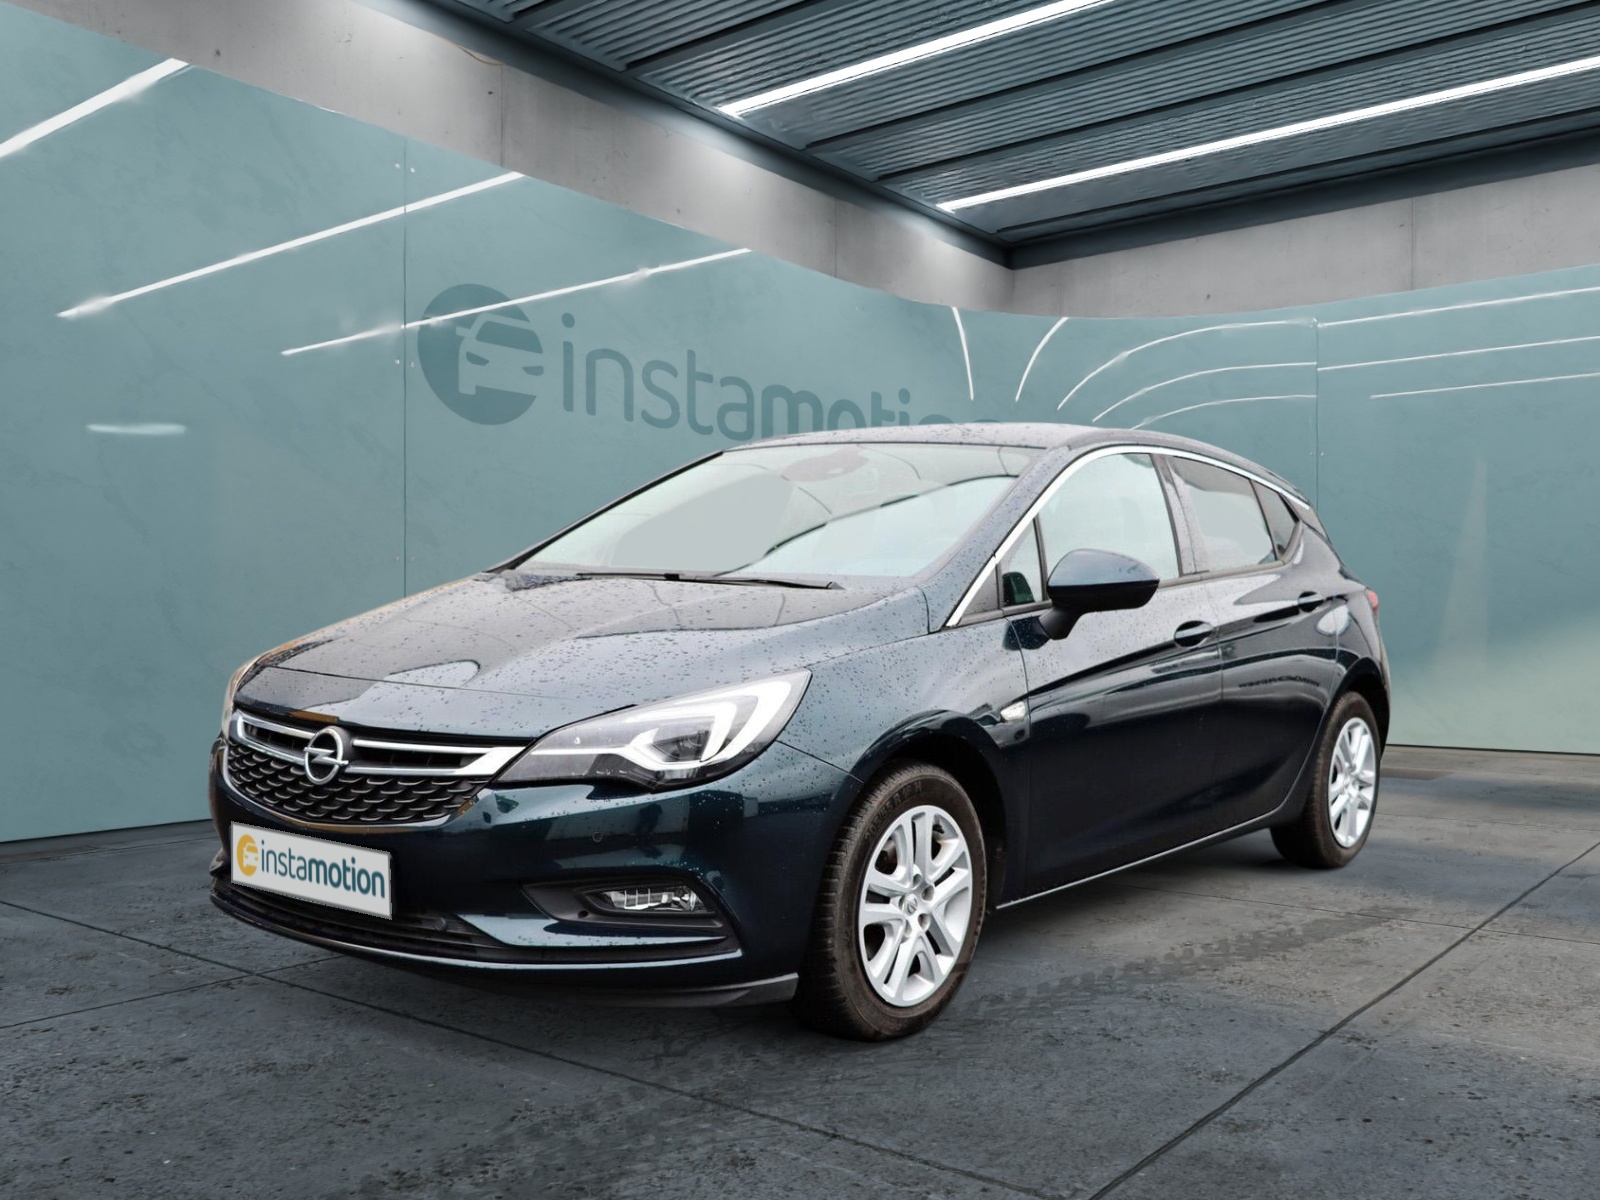 Opel Astra 1.4 K Turbo 5-Trg INNOVATION